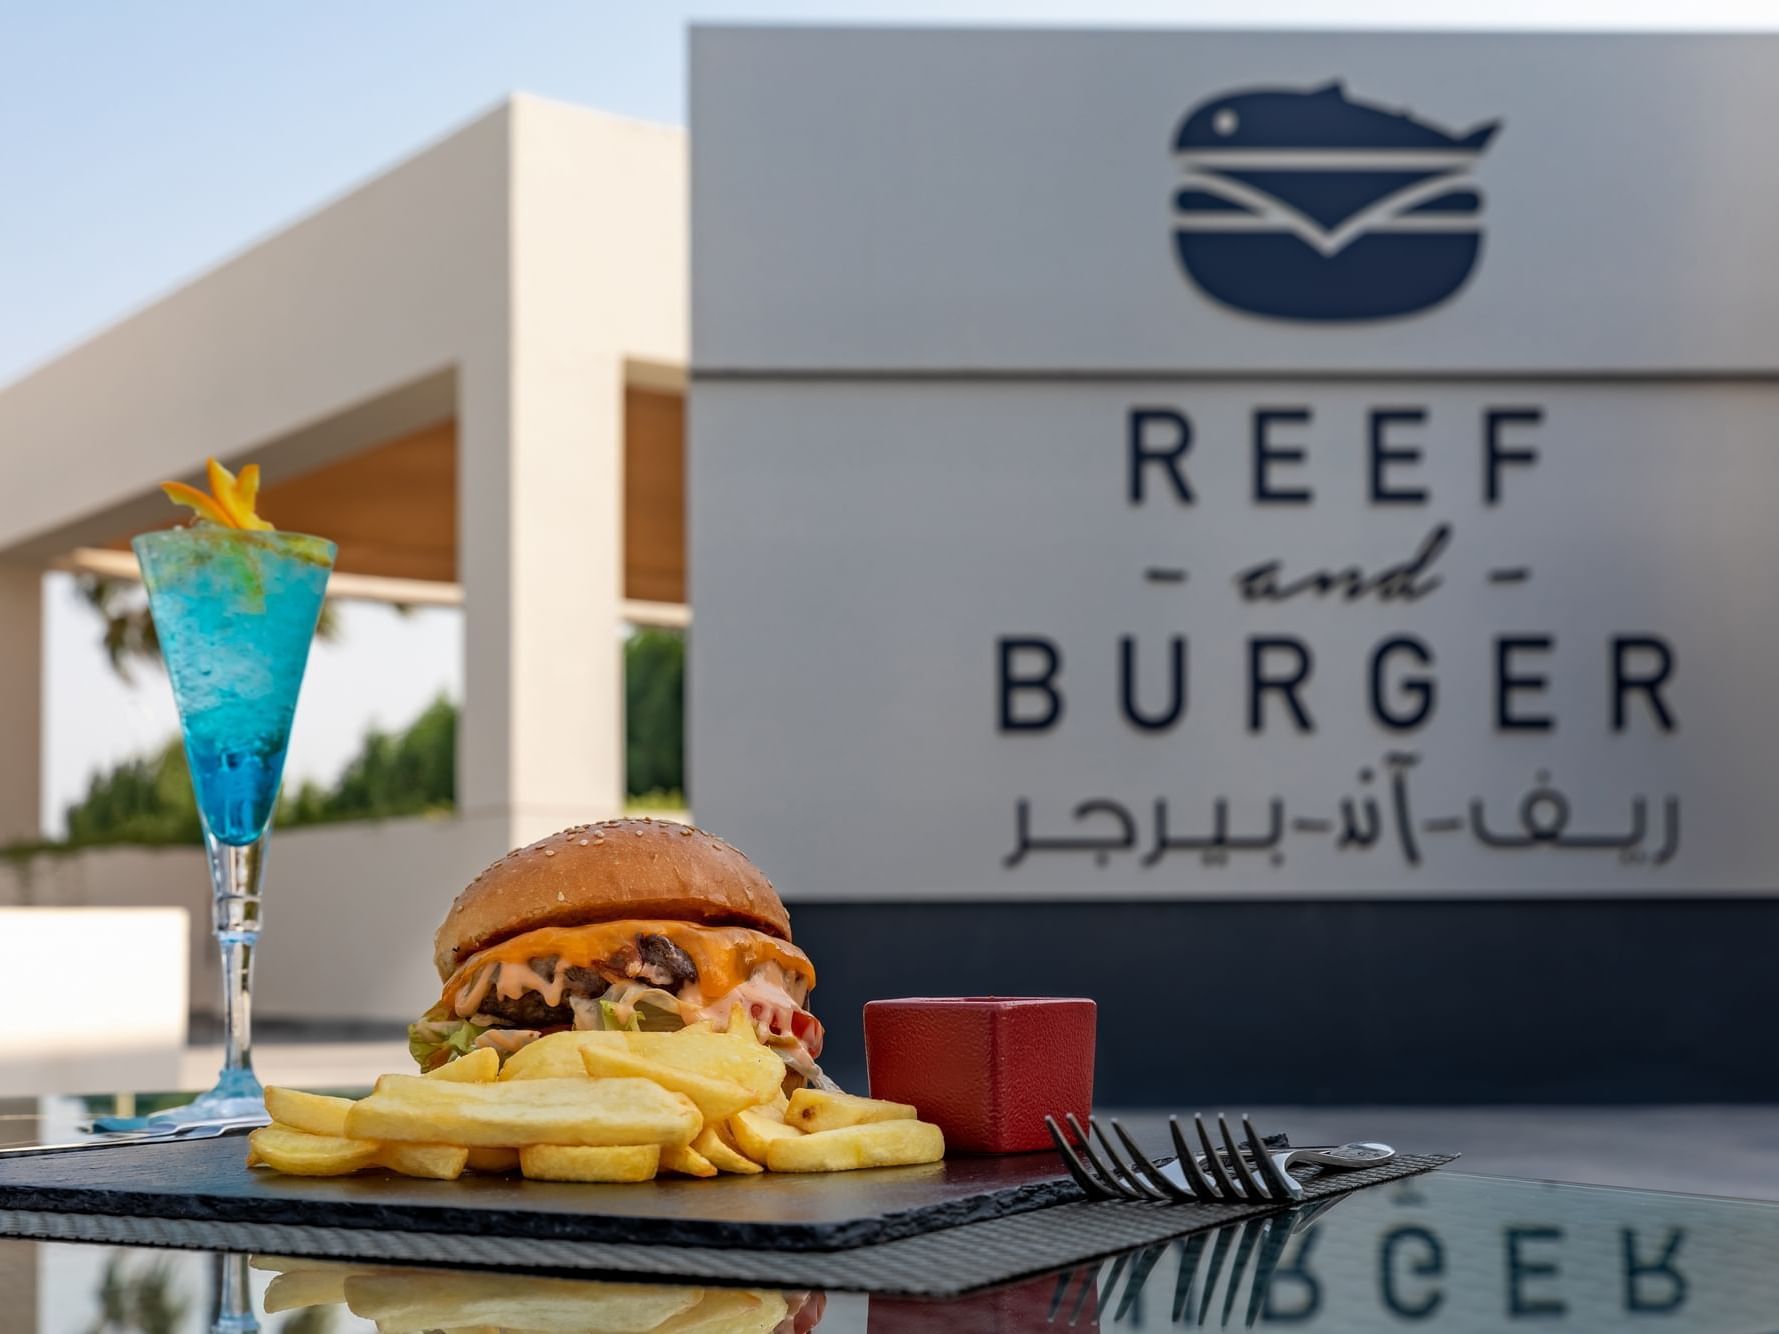 مطعم ريف آند بيرجر في منتجع سيلين في مسيعيد قطر أحد أفضل منتجعات وفنادق قطر 